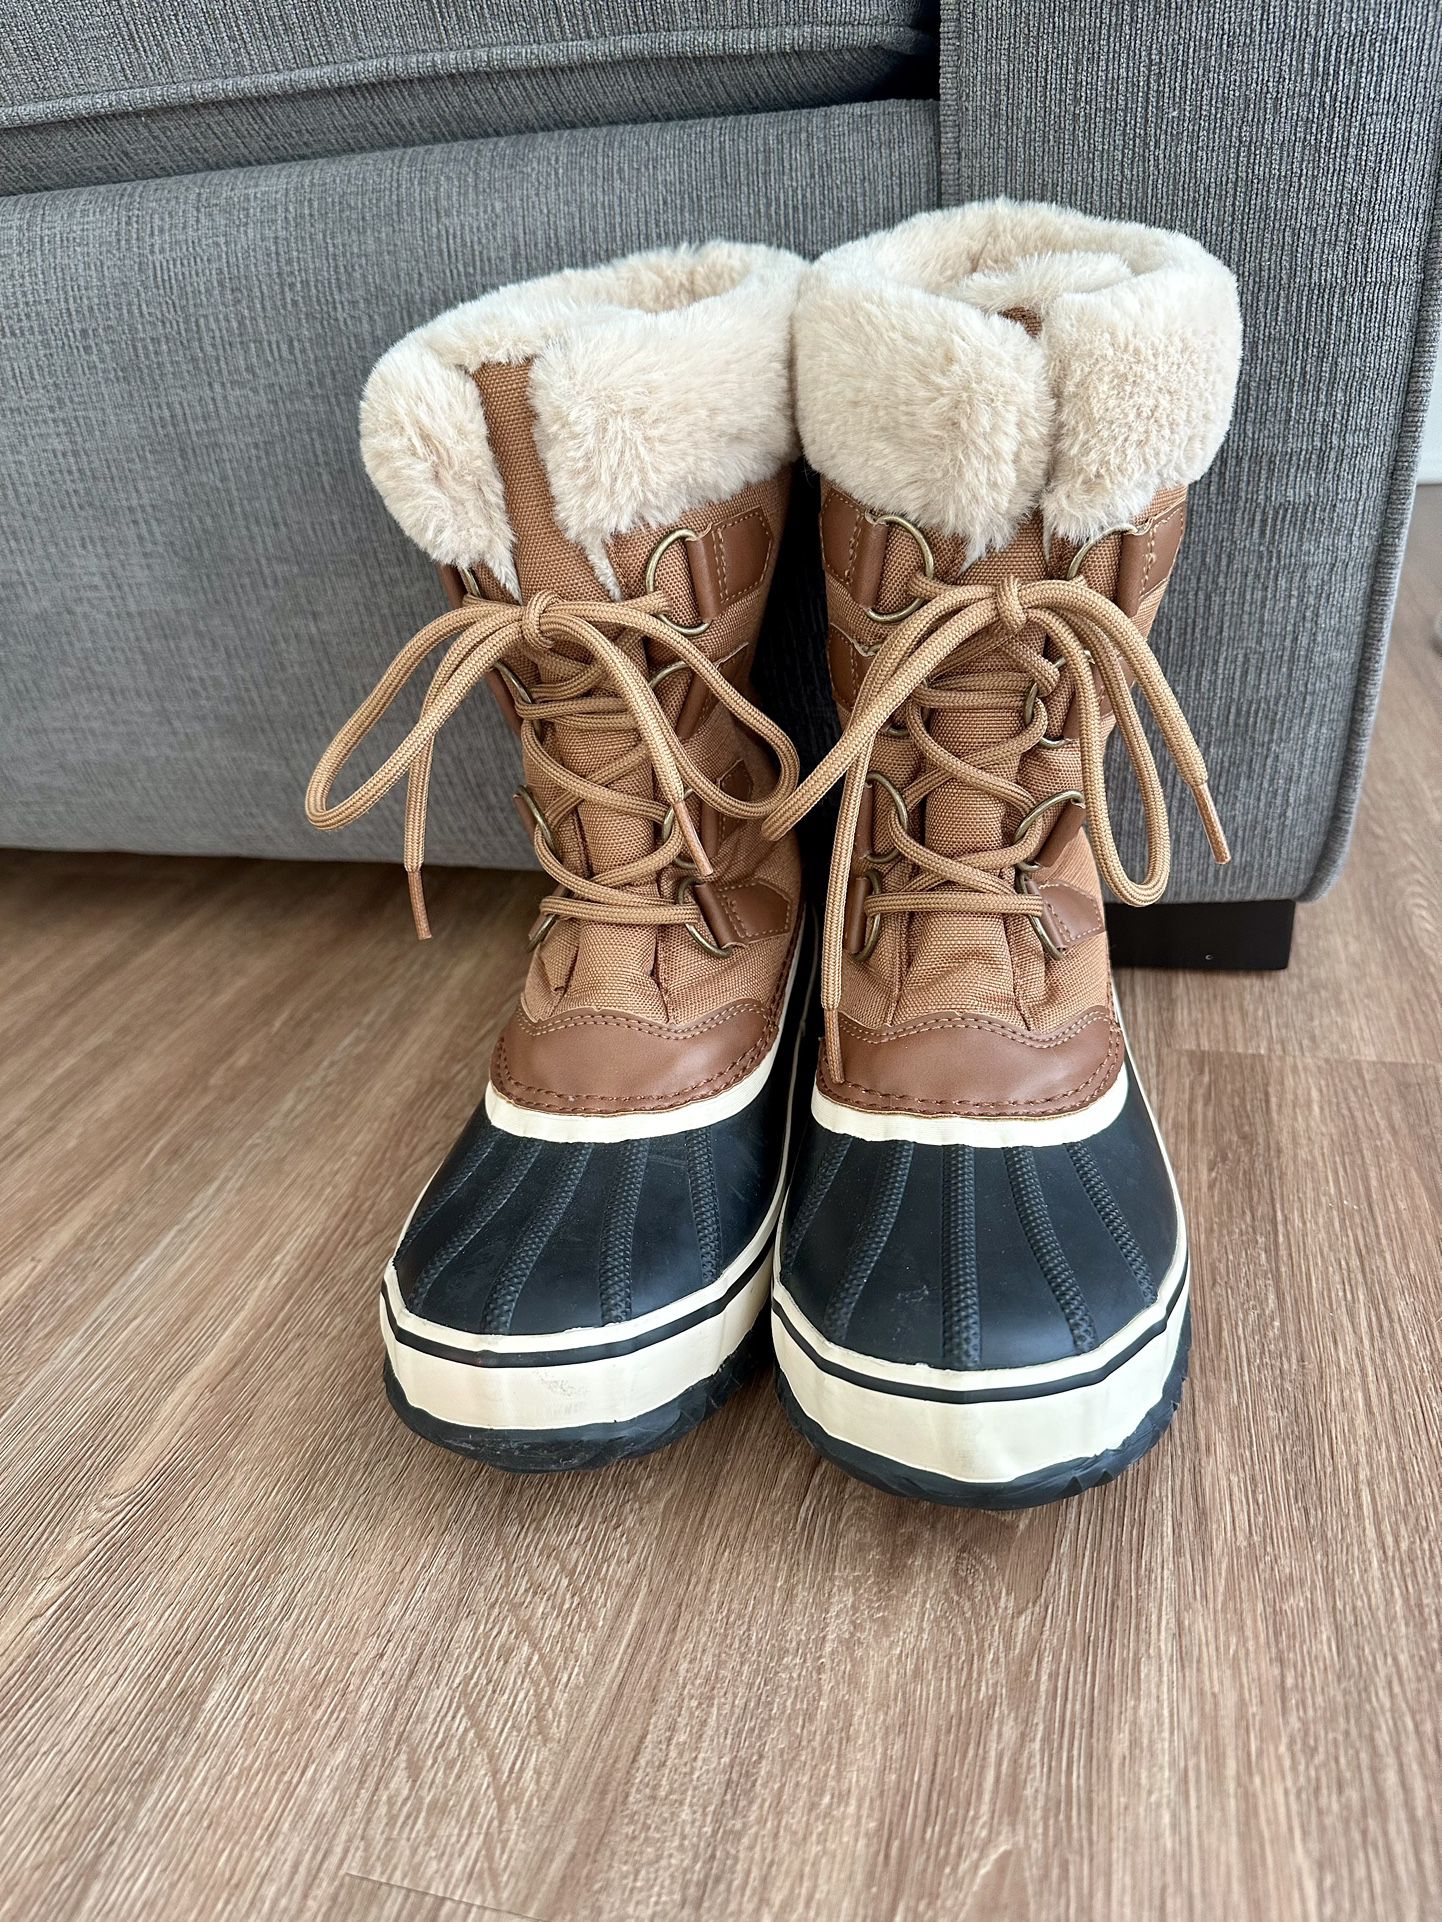 JBU Snow boots 